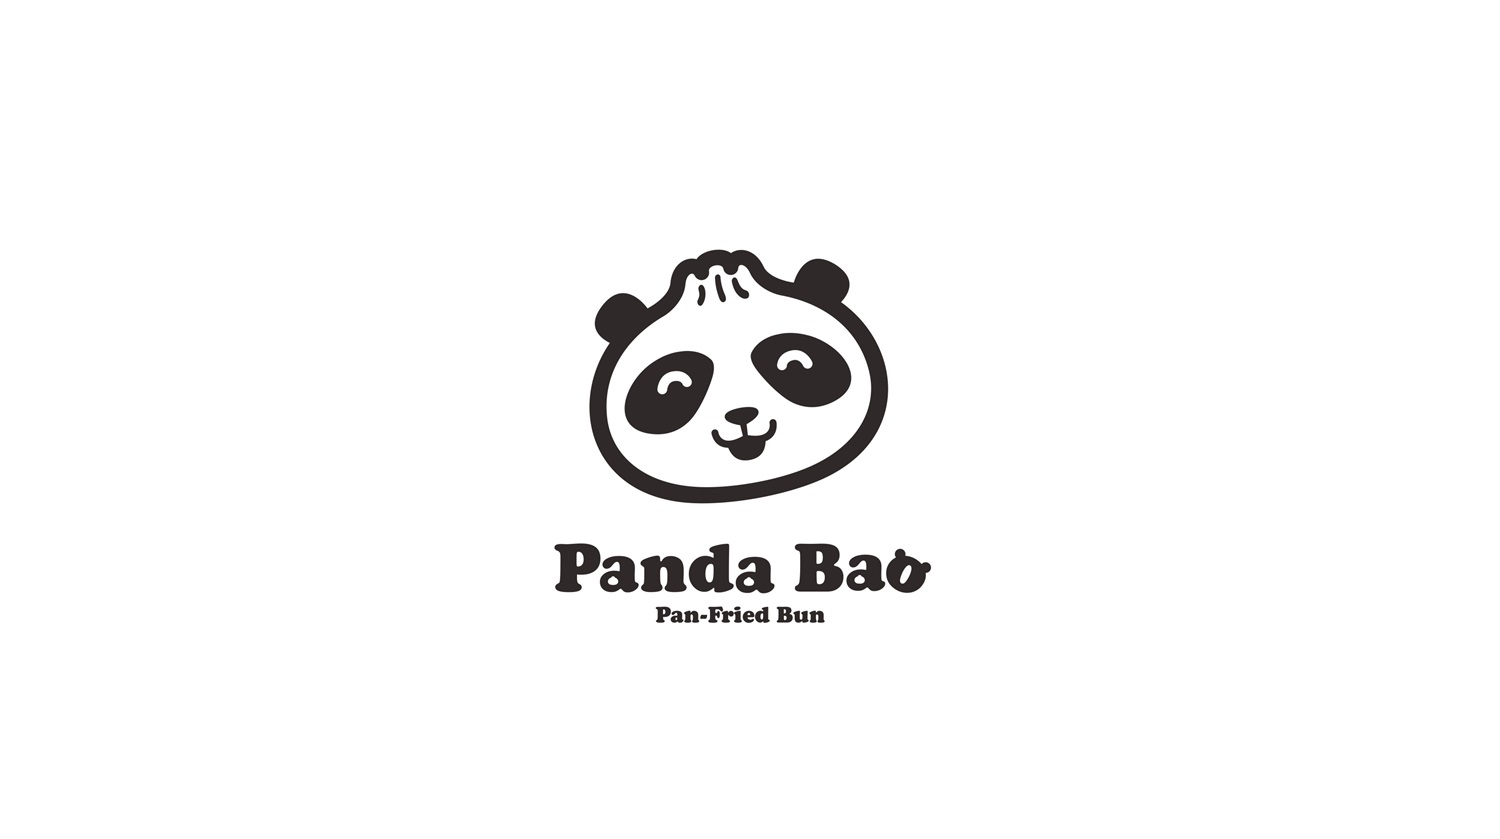 水煎包连锁餐饮品牌Panda BaoLOGO设计